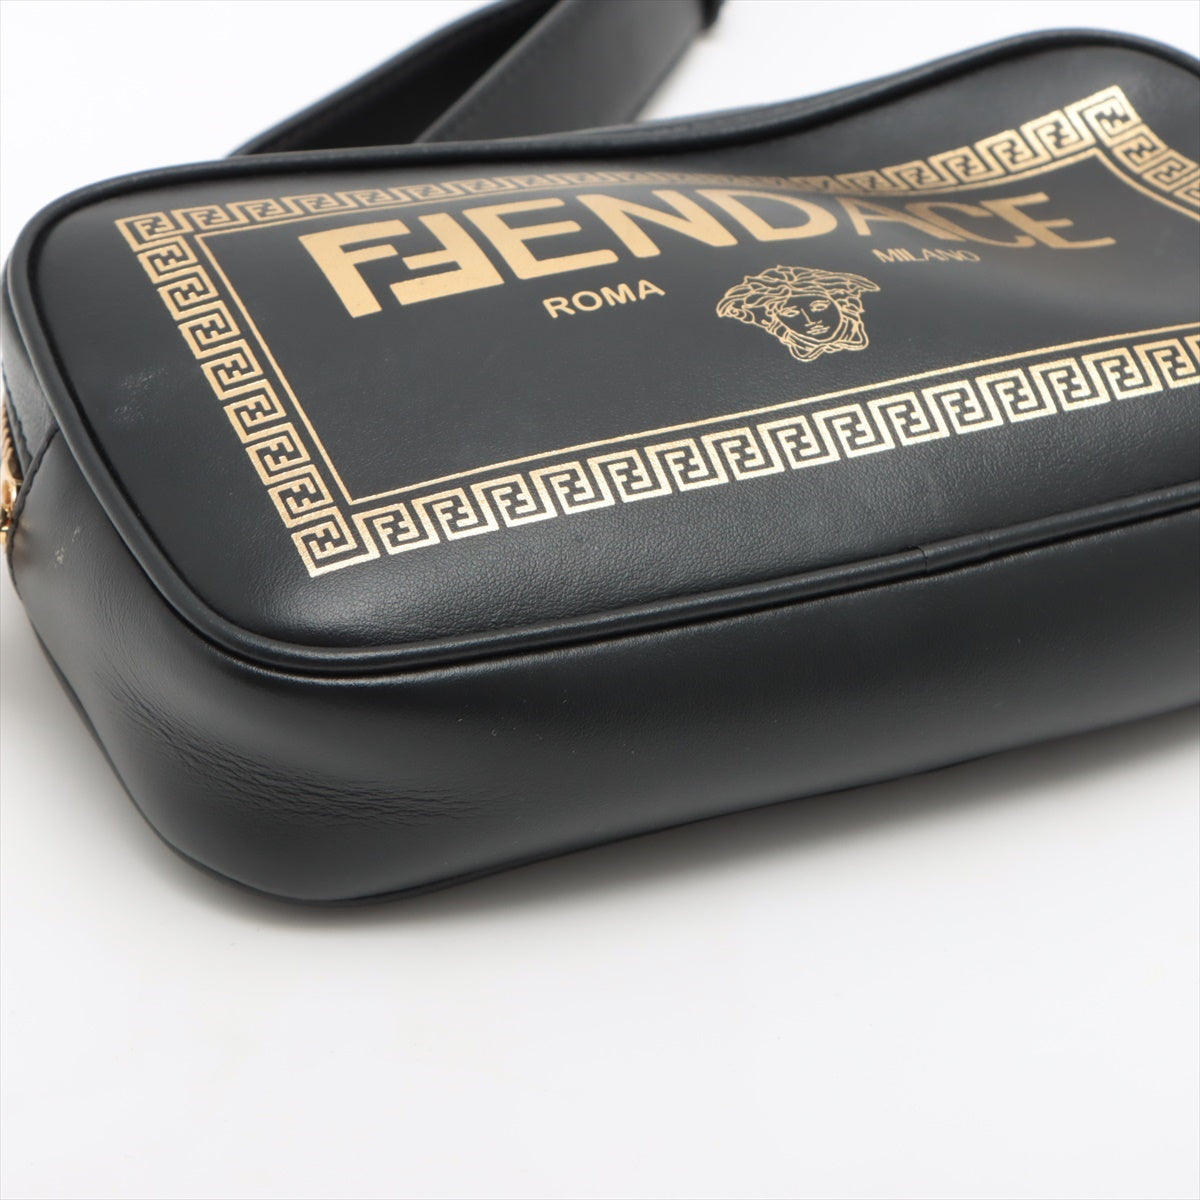 Fendi x Versace Fender Choi Camera Bag Leather Shoulder Bag Black 1006611